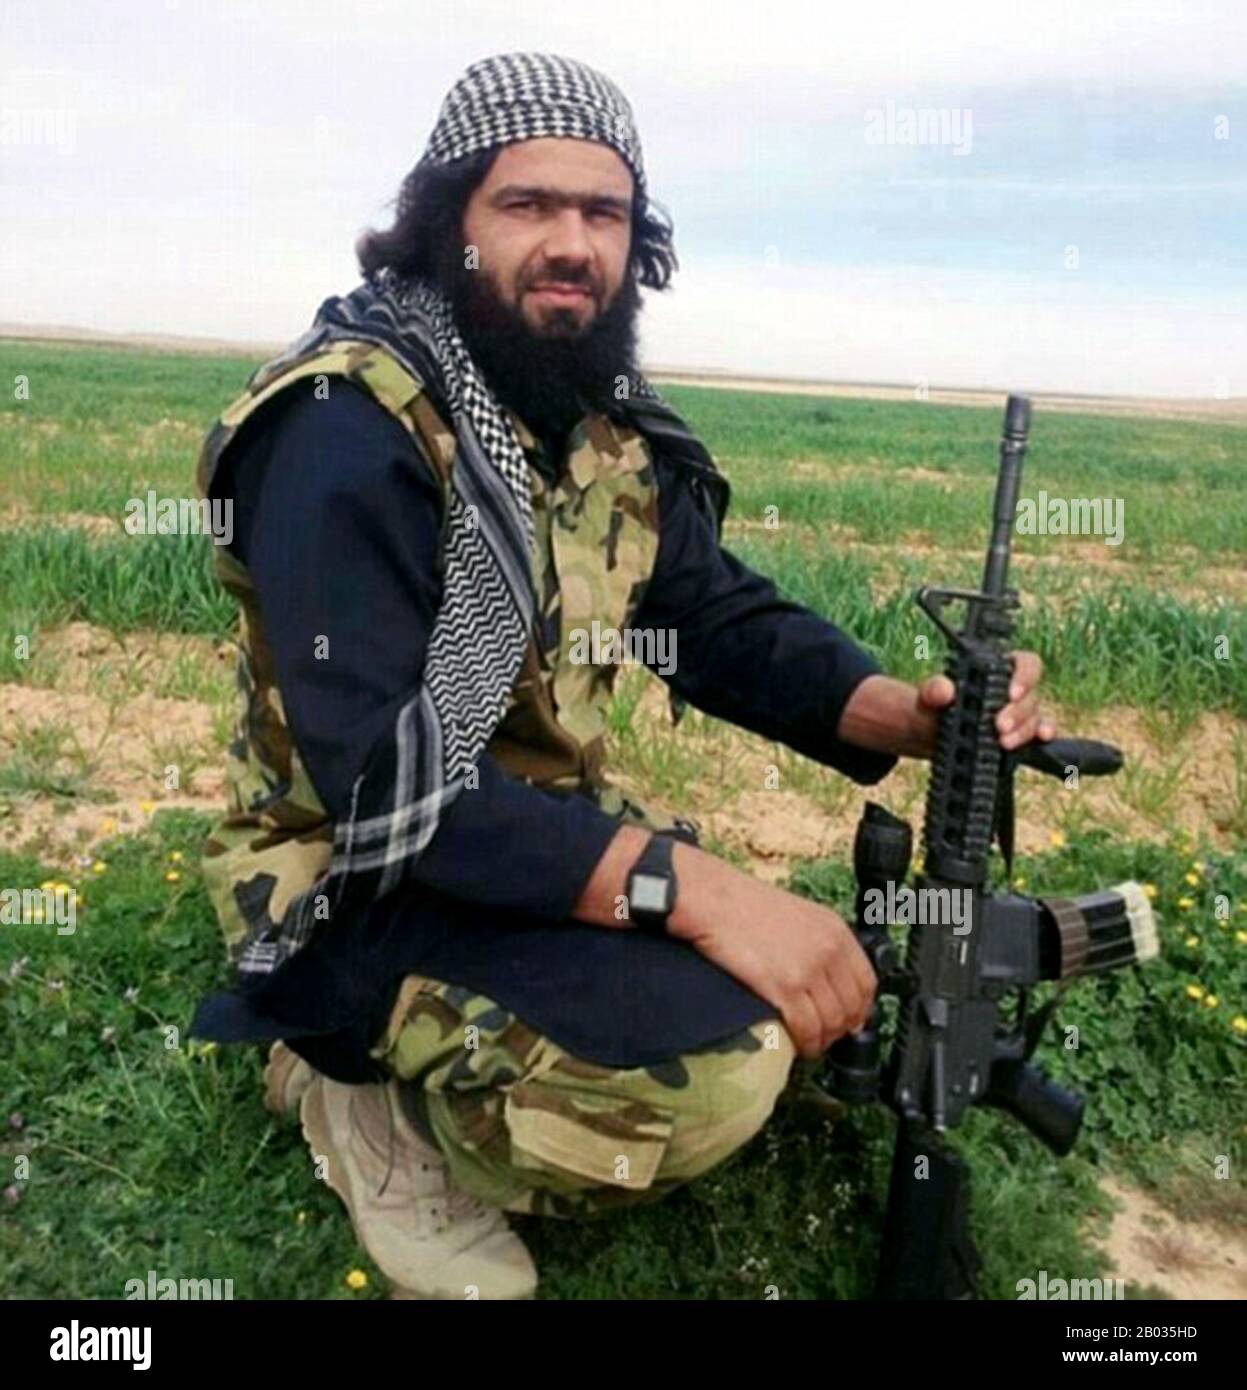 Der Shaker Wahib al-Fahdawi al-Dulaimi (1986 - 6. Mai 2016), besser bekannt als Abu Waheeb ("Vater des Großzügigen"), war ein Führer der militanten Gruppe Islamischer Staat im Irak und der Levante in Anbar im Irak. Er war bekannt für die Hinrichtung von drei syrischen Alawite-Lastwagenfahrern im Irak im Sommer 2013, als Chef der Al Anbar Lions. Er und drei weitere wurden im Mai 2016 bei einem von den Vereinigten Staaten geführten Koalitions-Luftangriff getötet, so das US-Verteidigungsministerium. Stockfoto